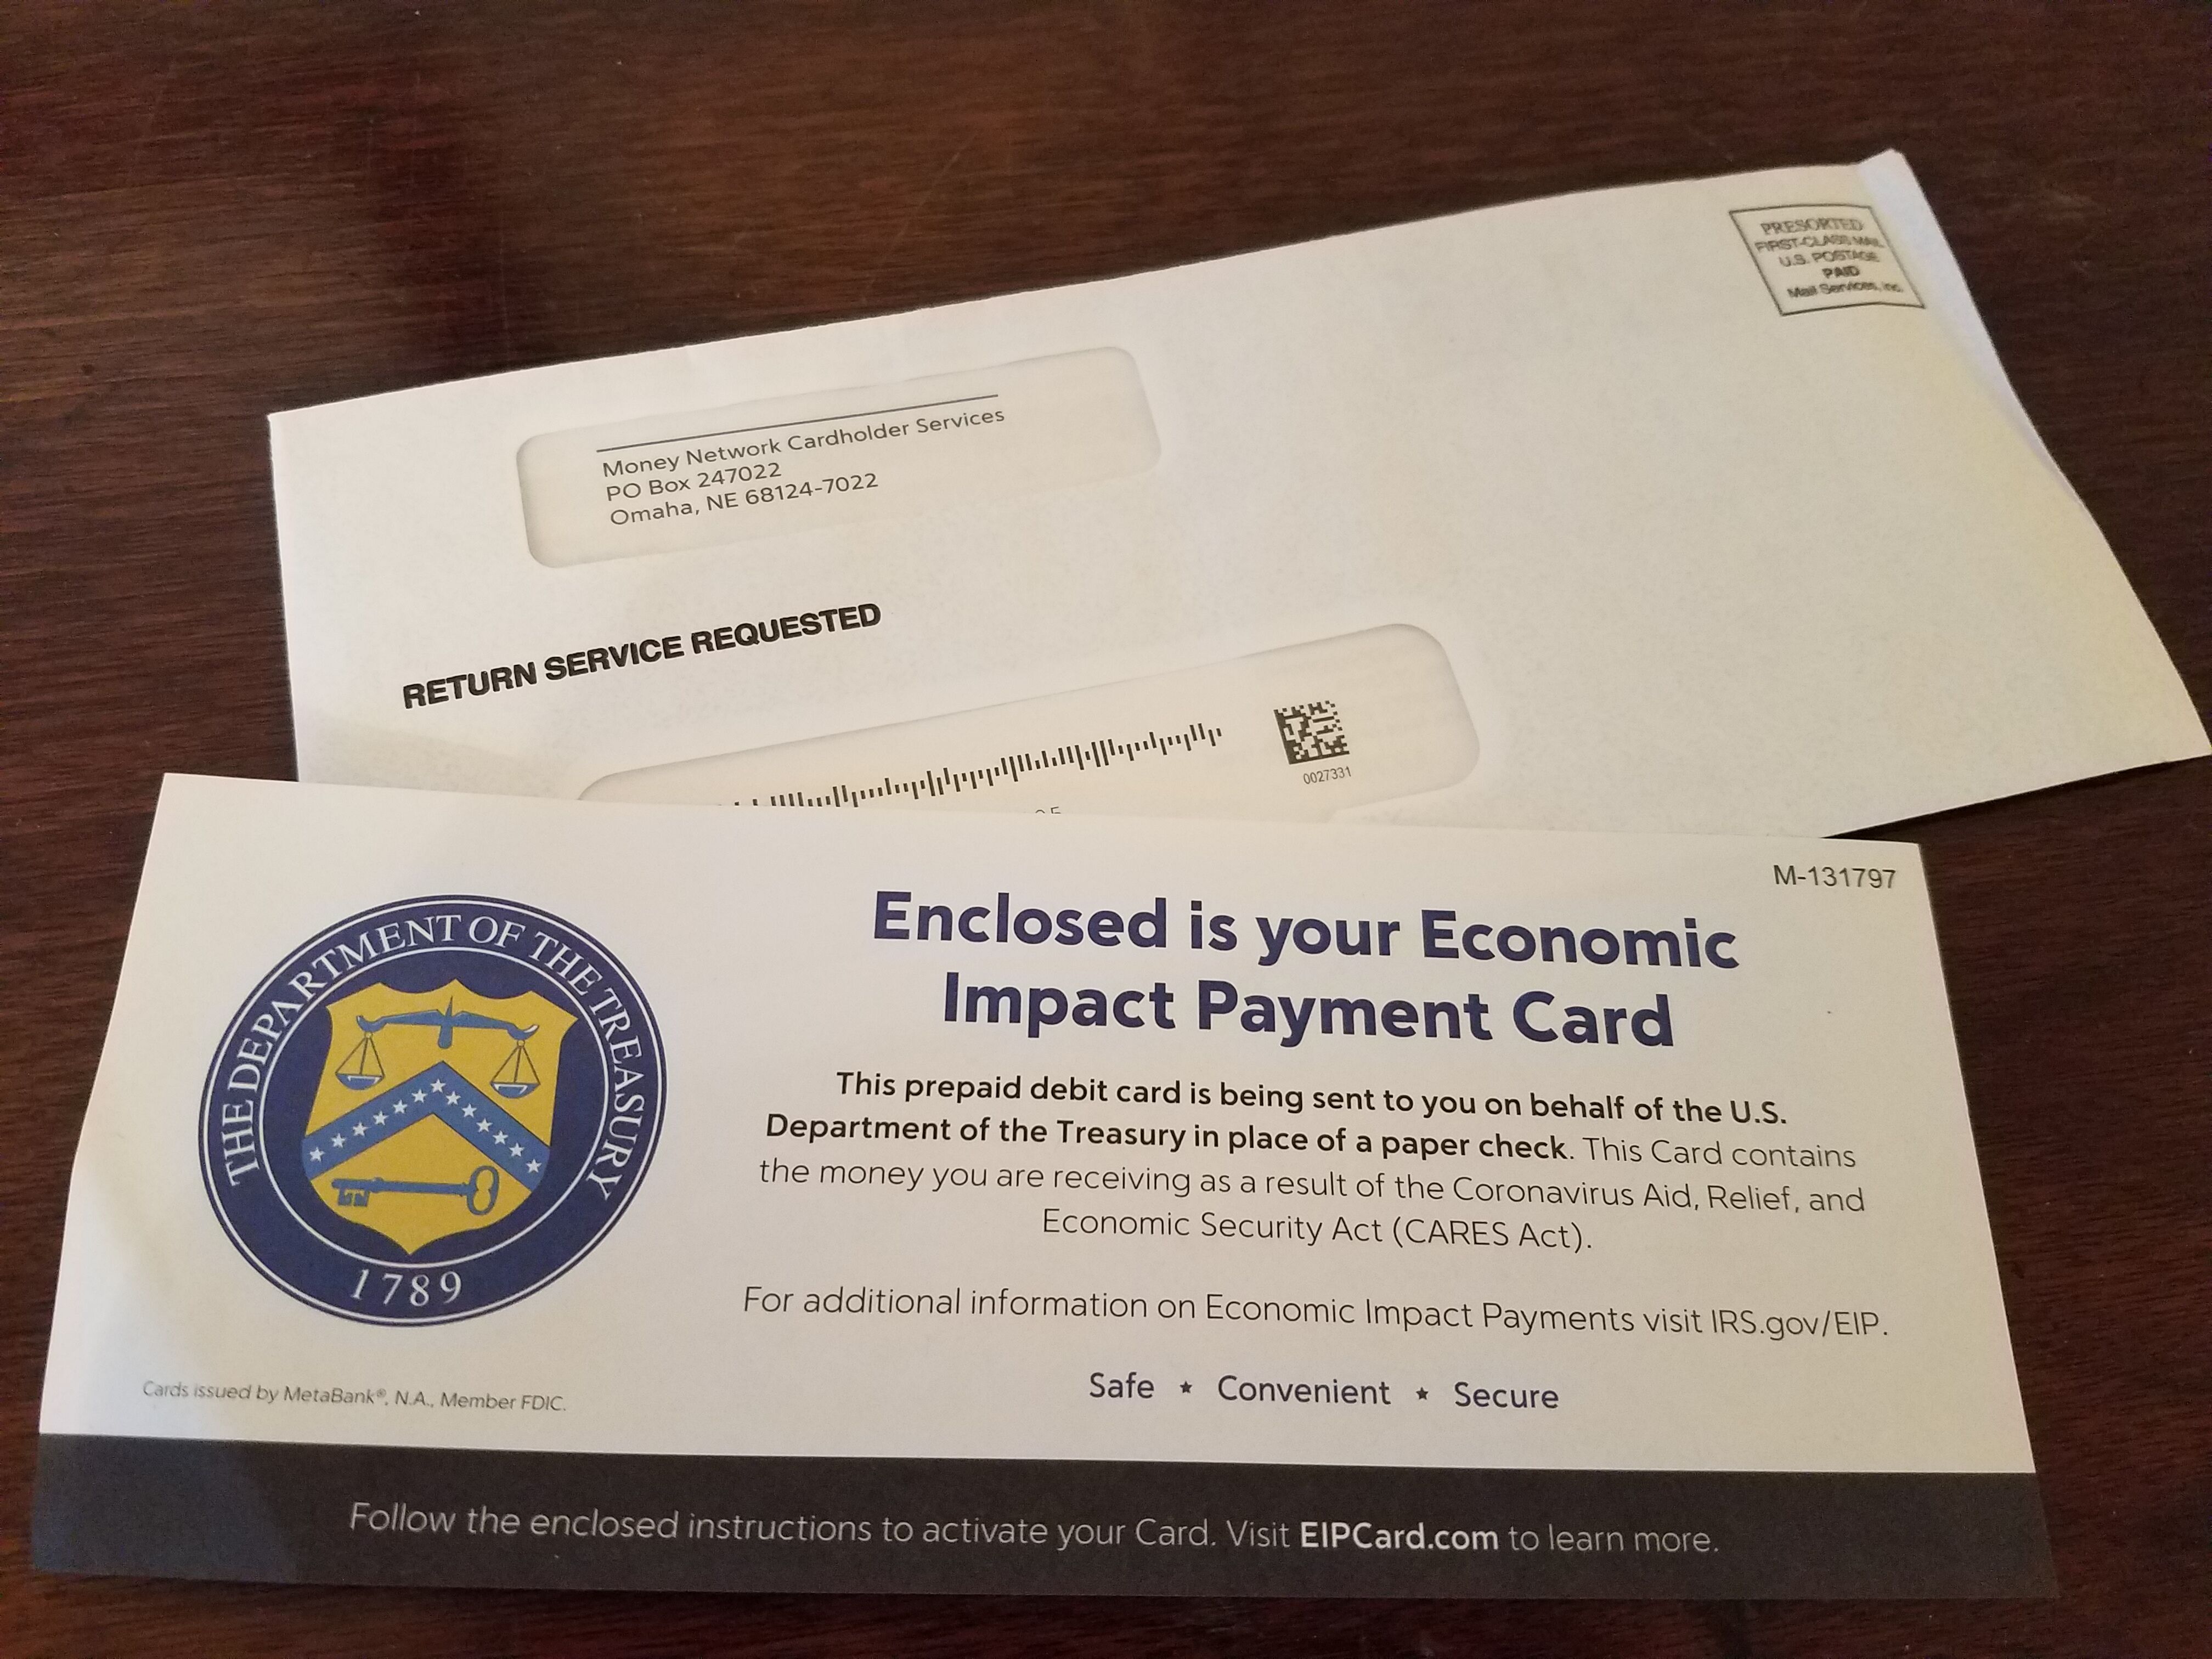 Stimulus debit card envelope laderlive